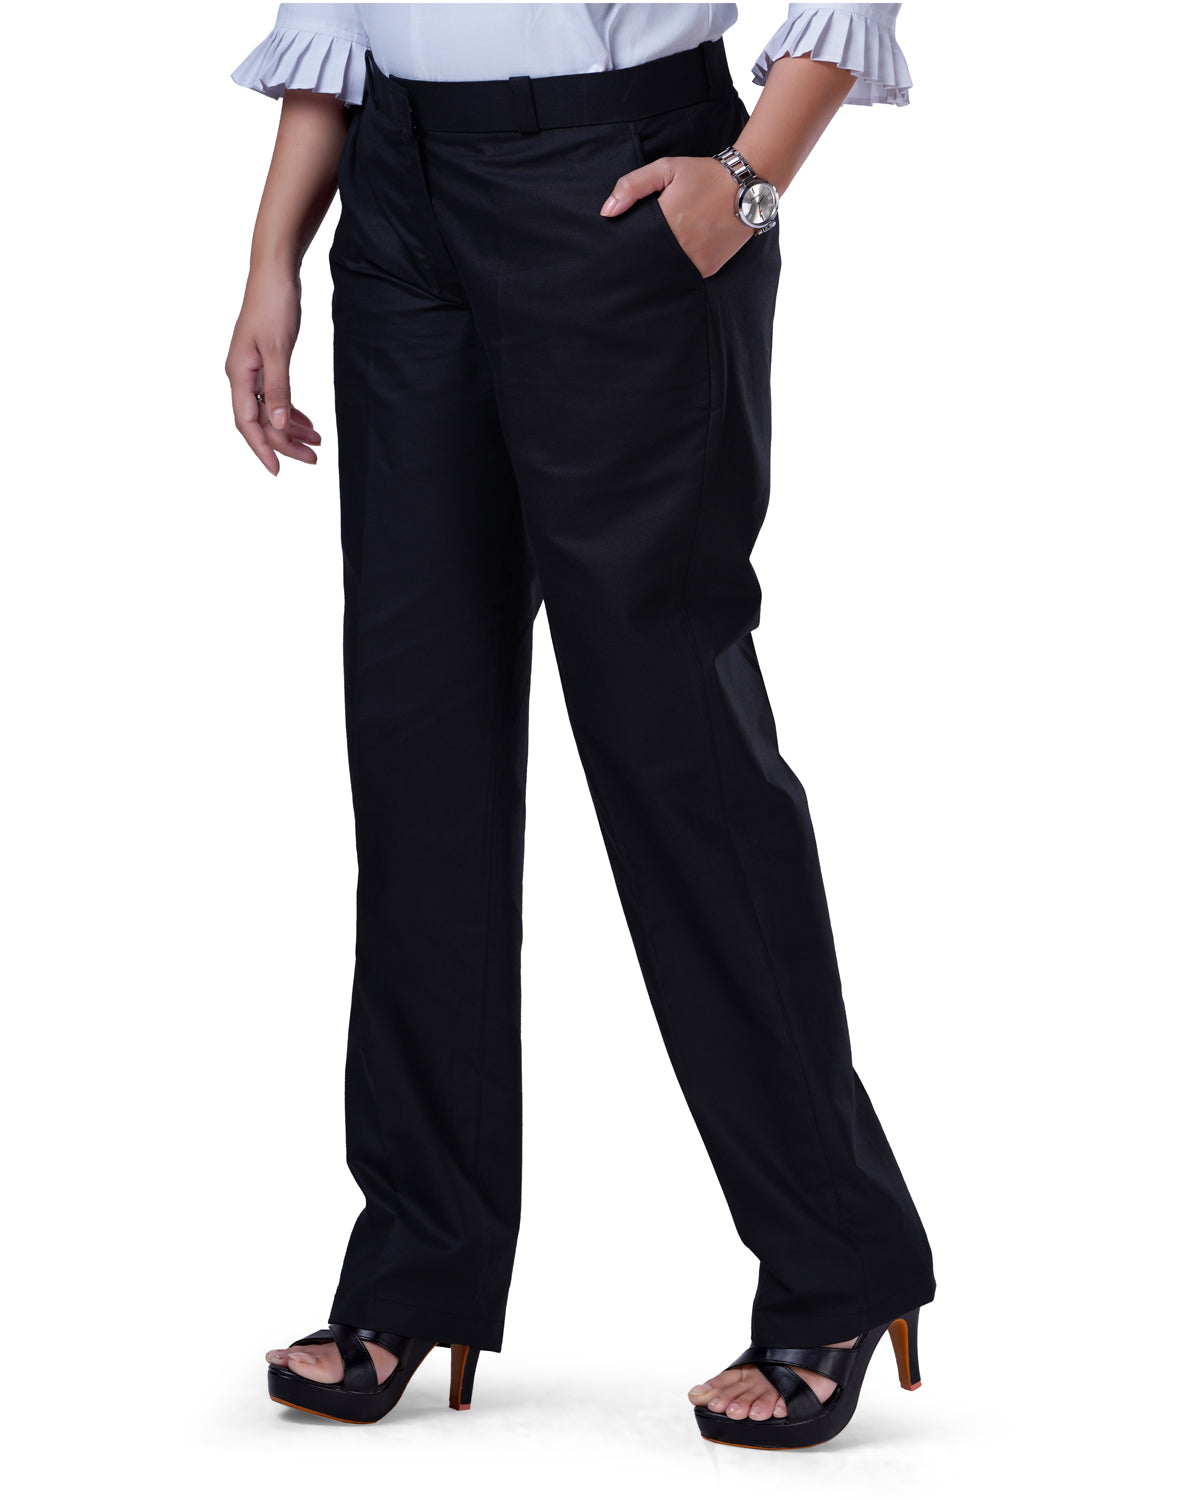 Men's Slim Fit Black Suit Pant - Black Suit Pant with Slim Fit for Men |  WAM DENIM